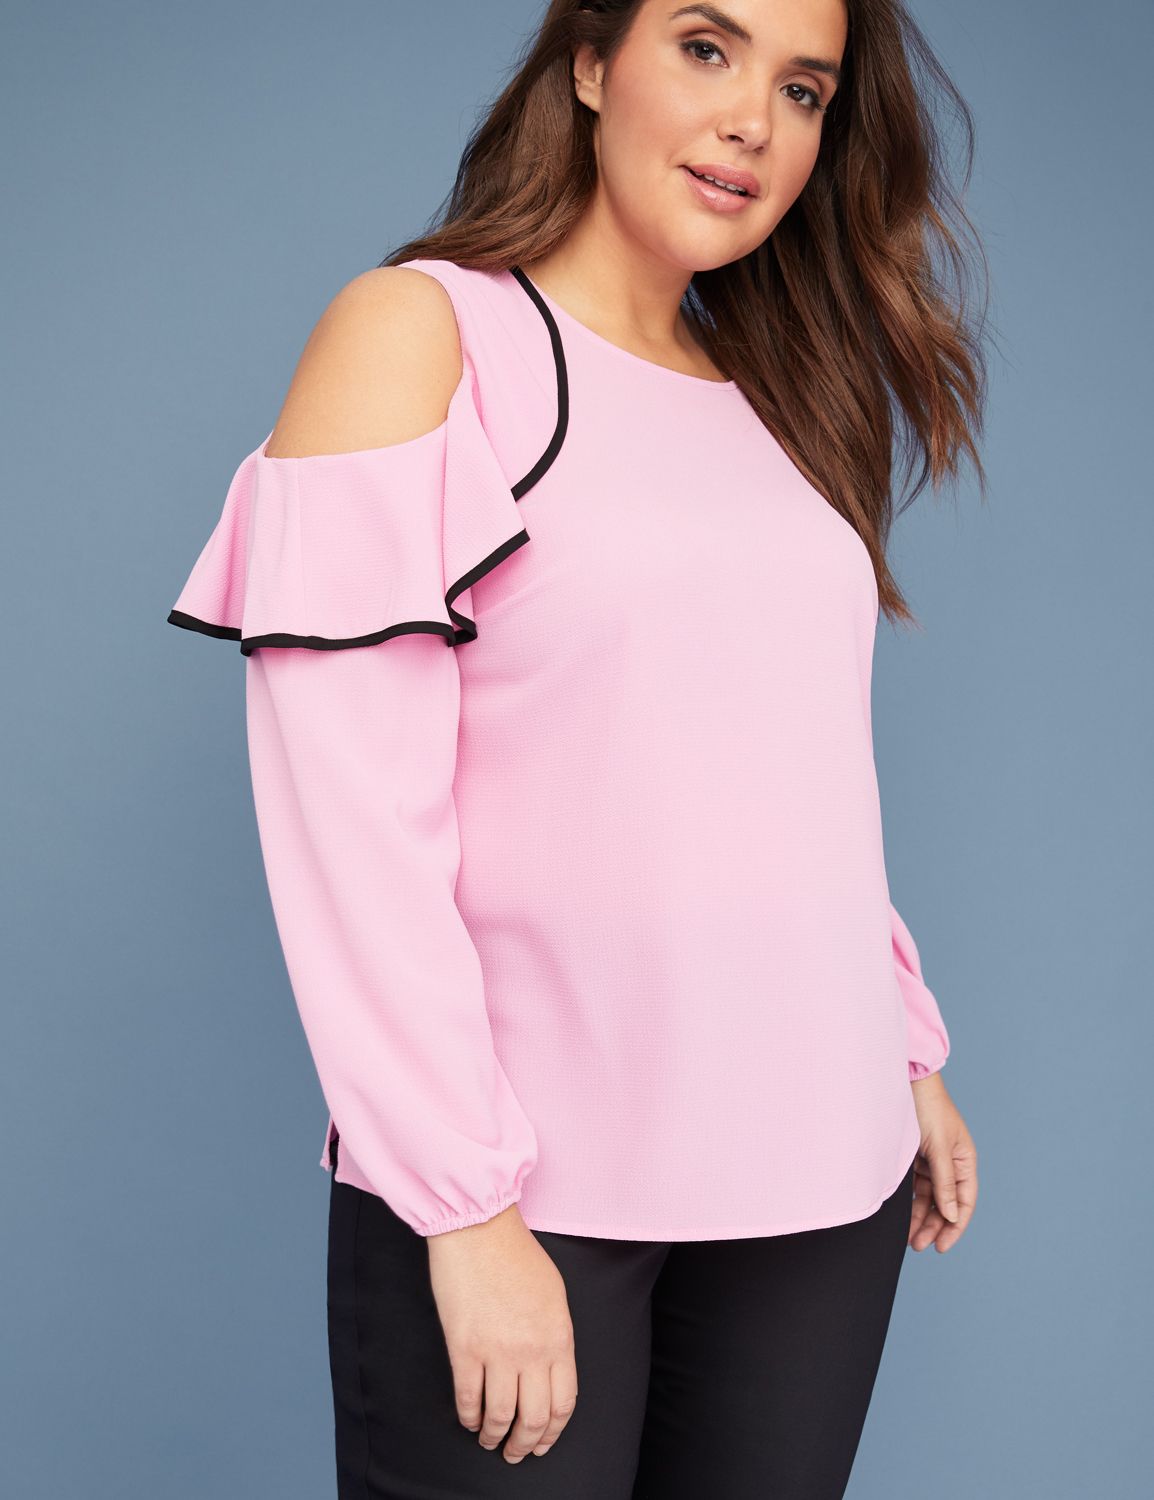 Plus Size Blouses & Women's Dressy Shirts | Lane Bryant